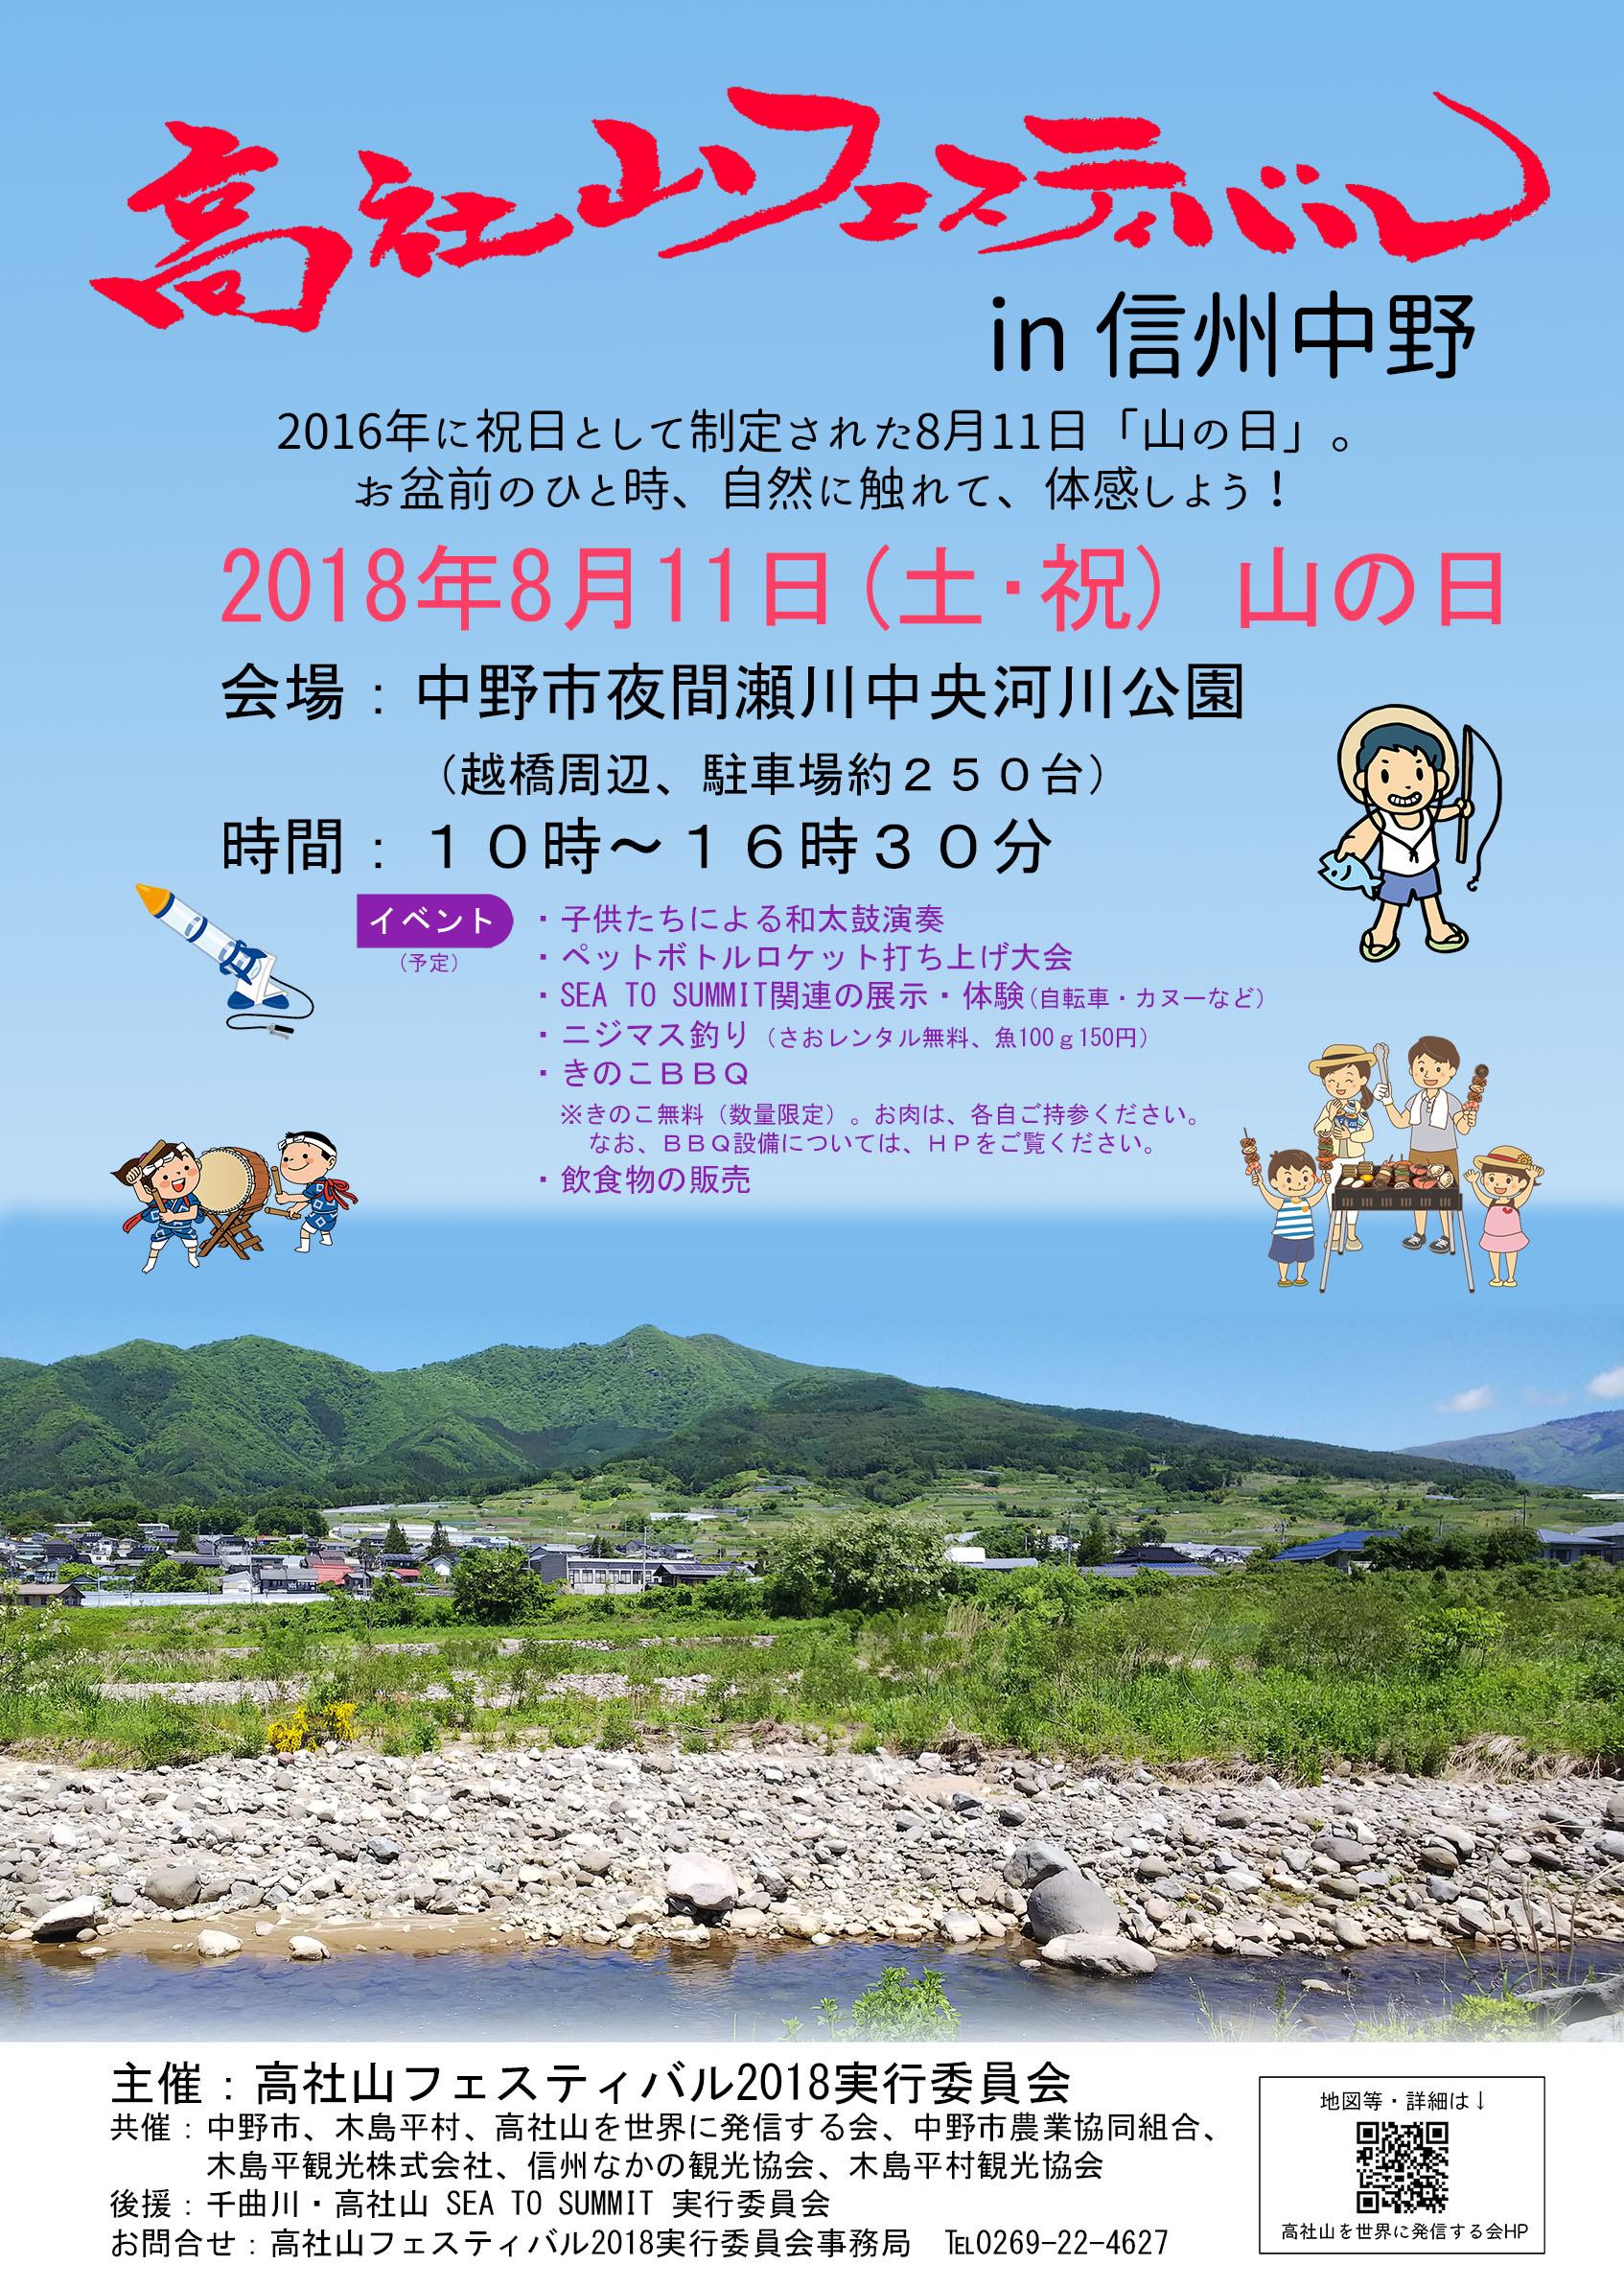 高社山フェスティバル In 信州中野 高社山を世界に発信する会